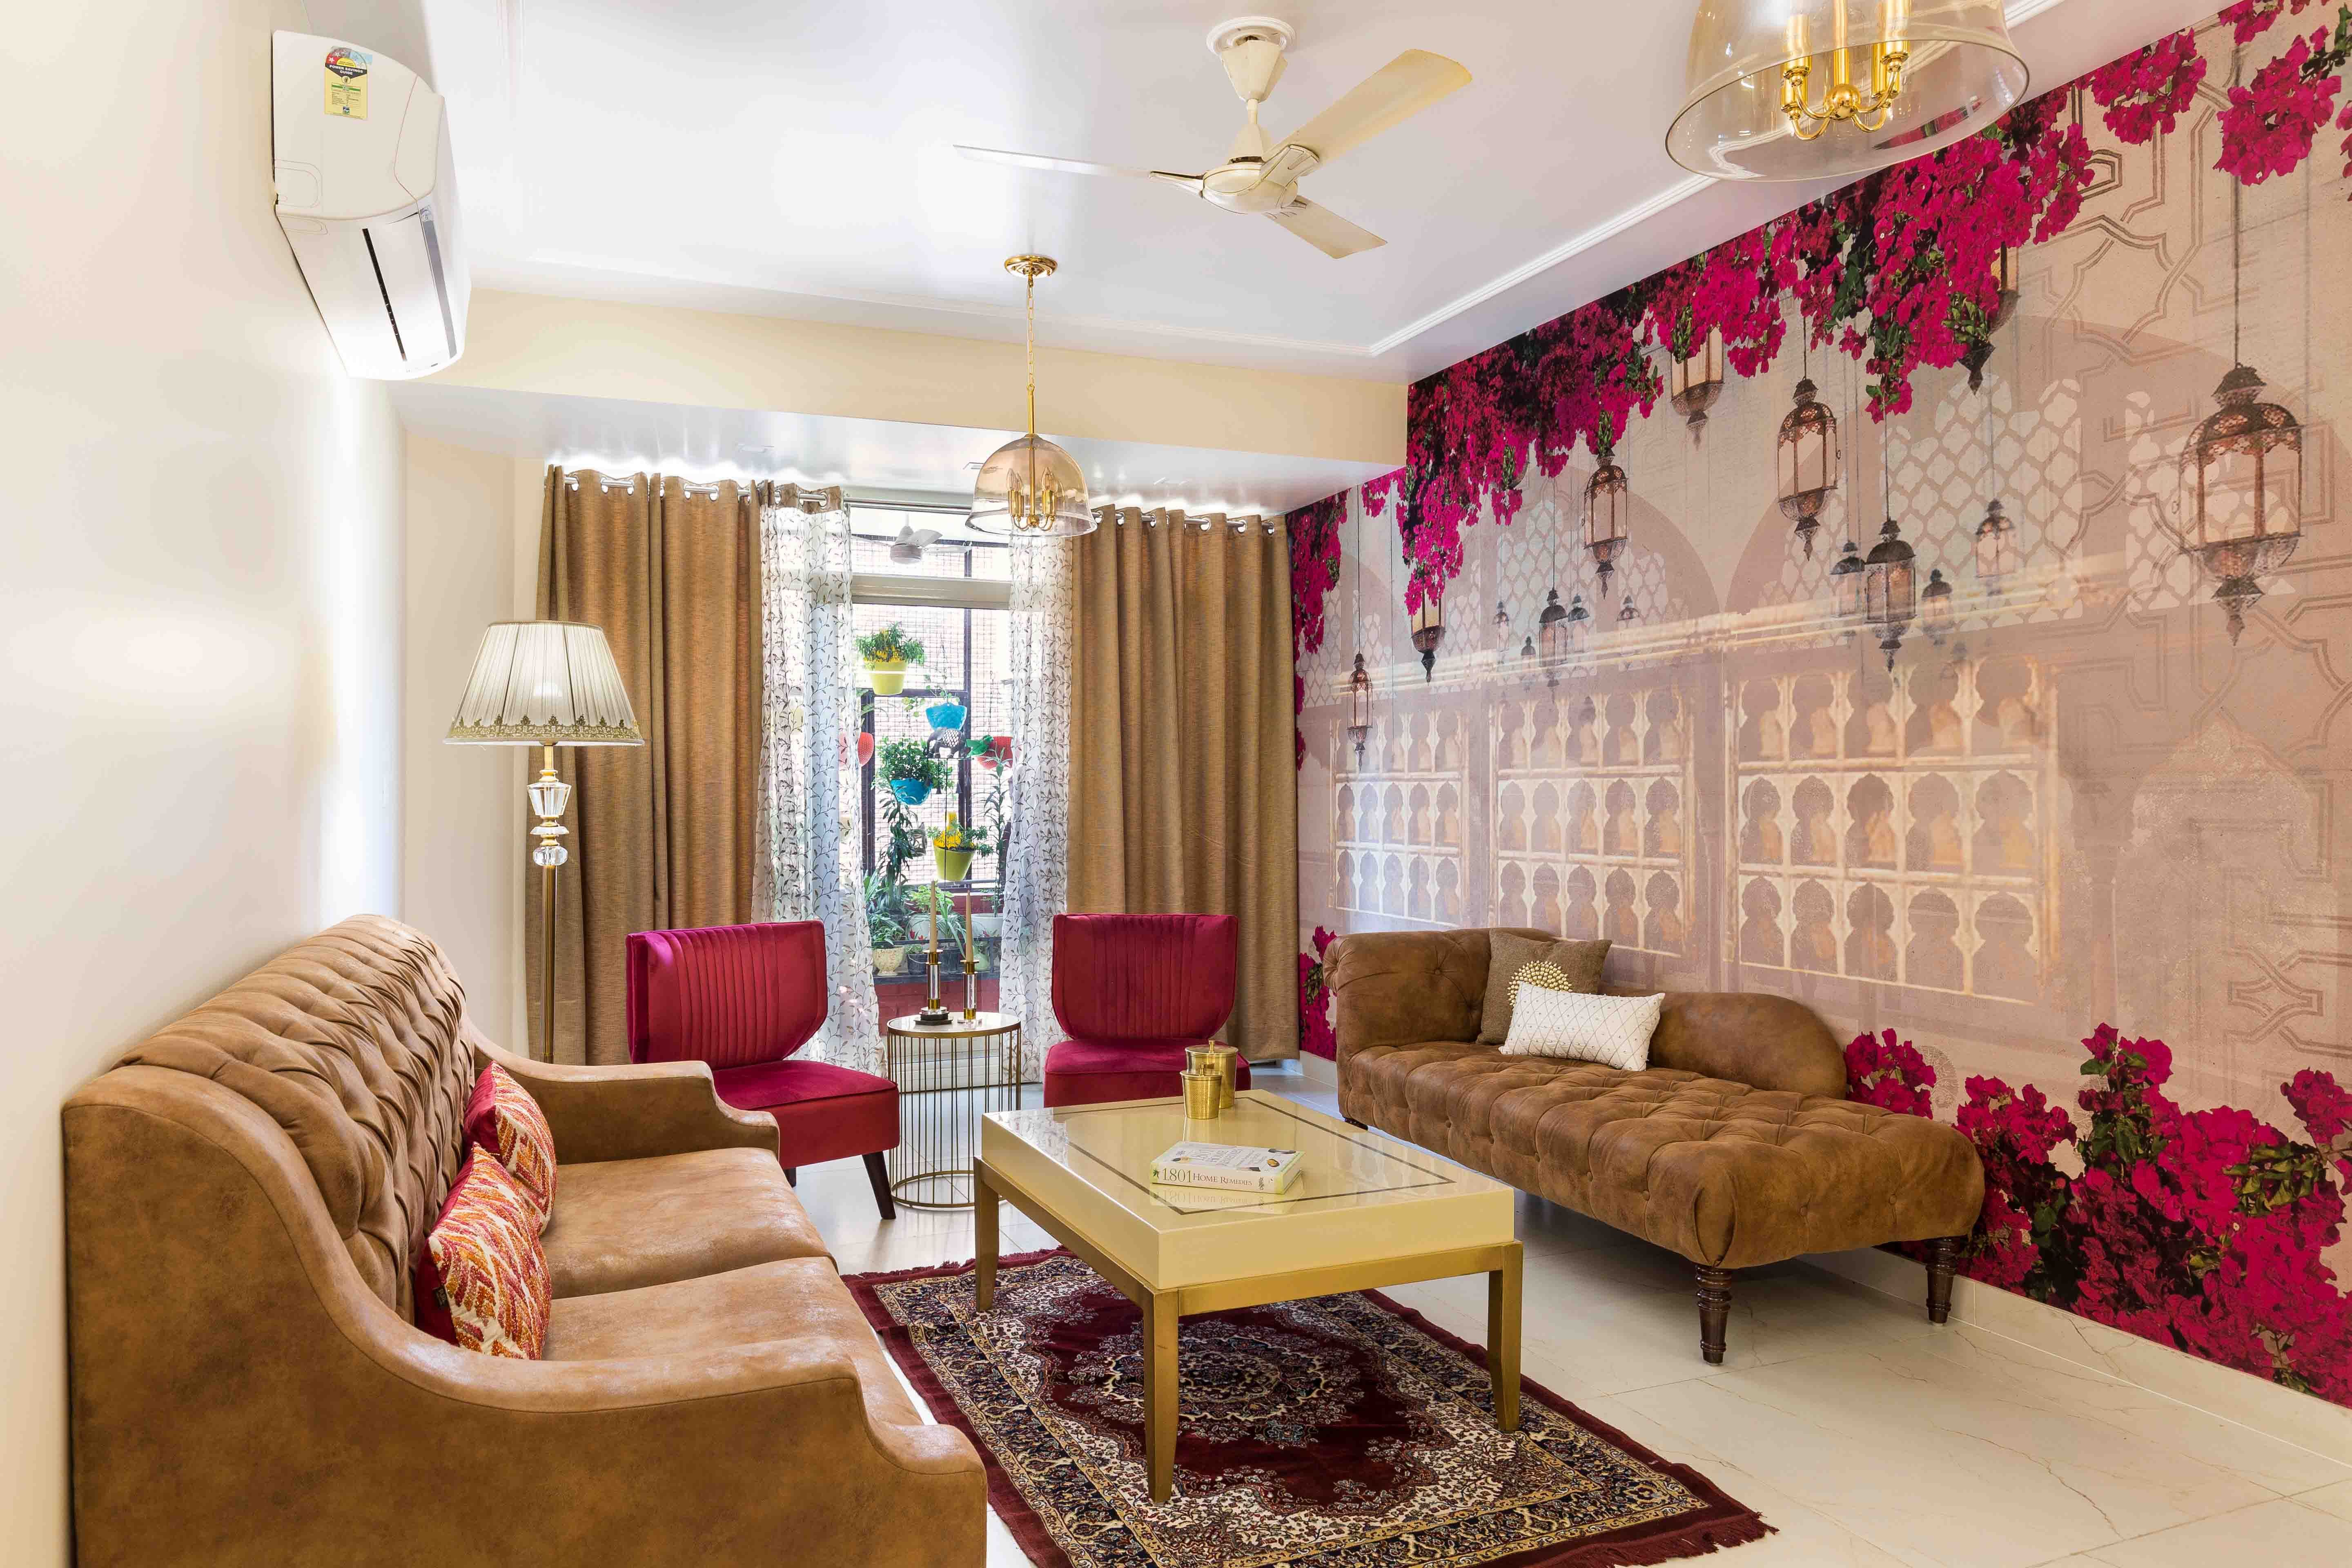 Modern Pink And Beige Historic Floral Living Room Wallpaper Design